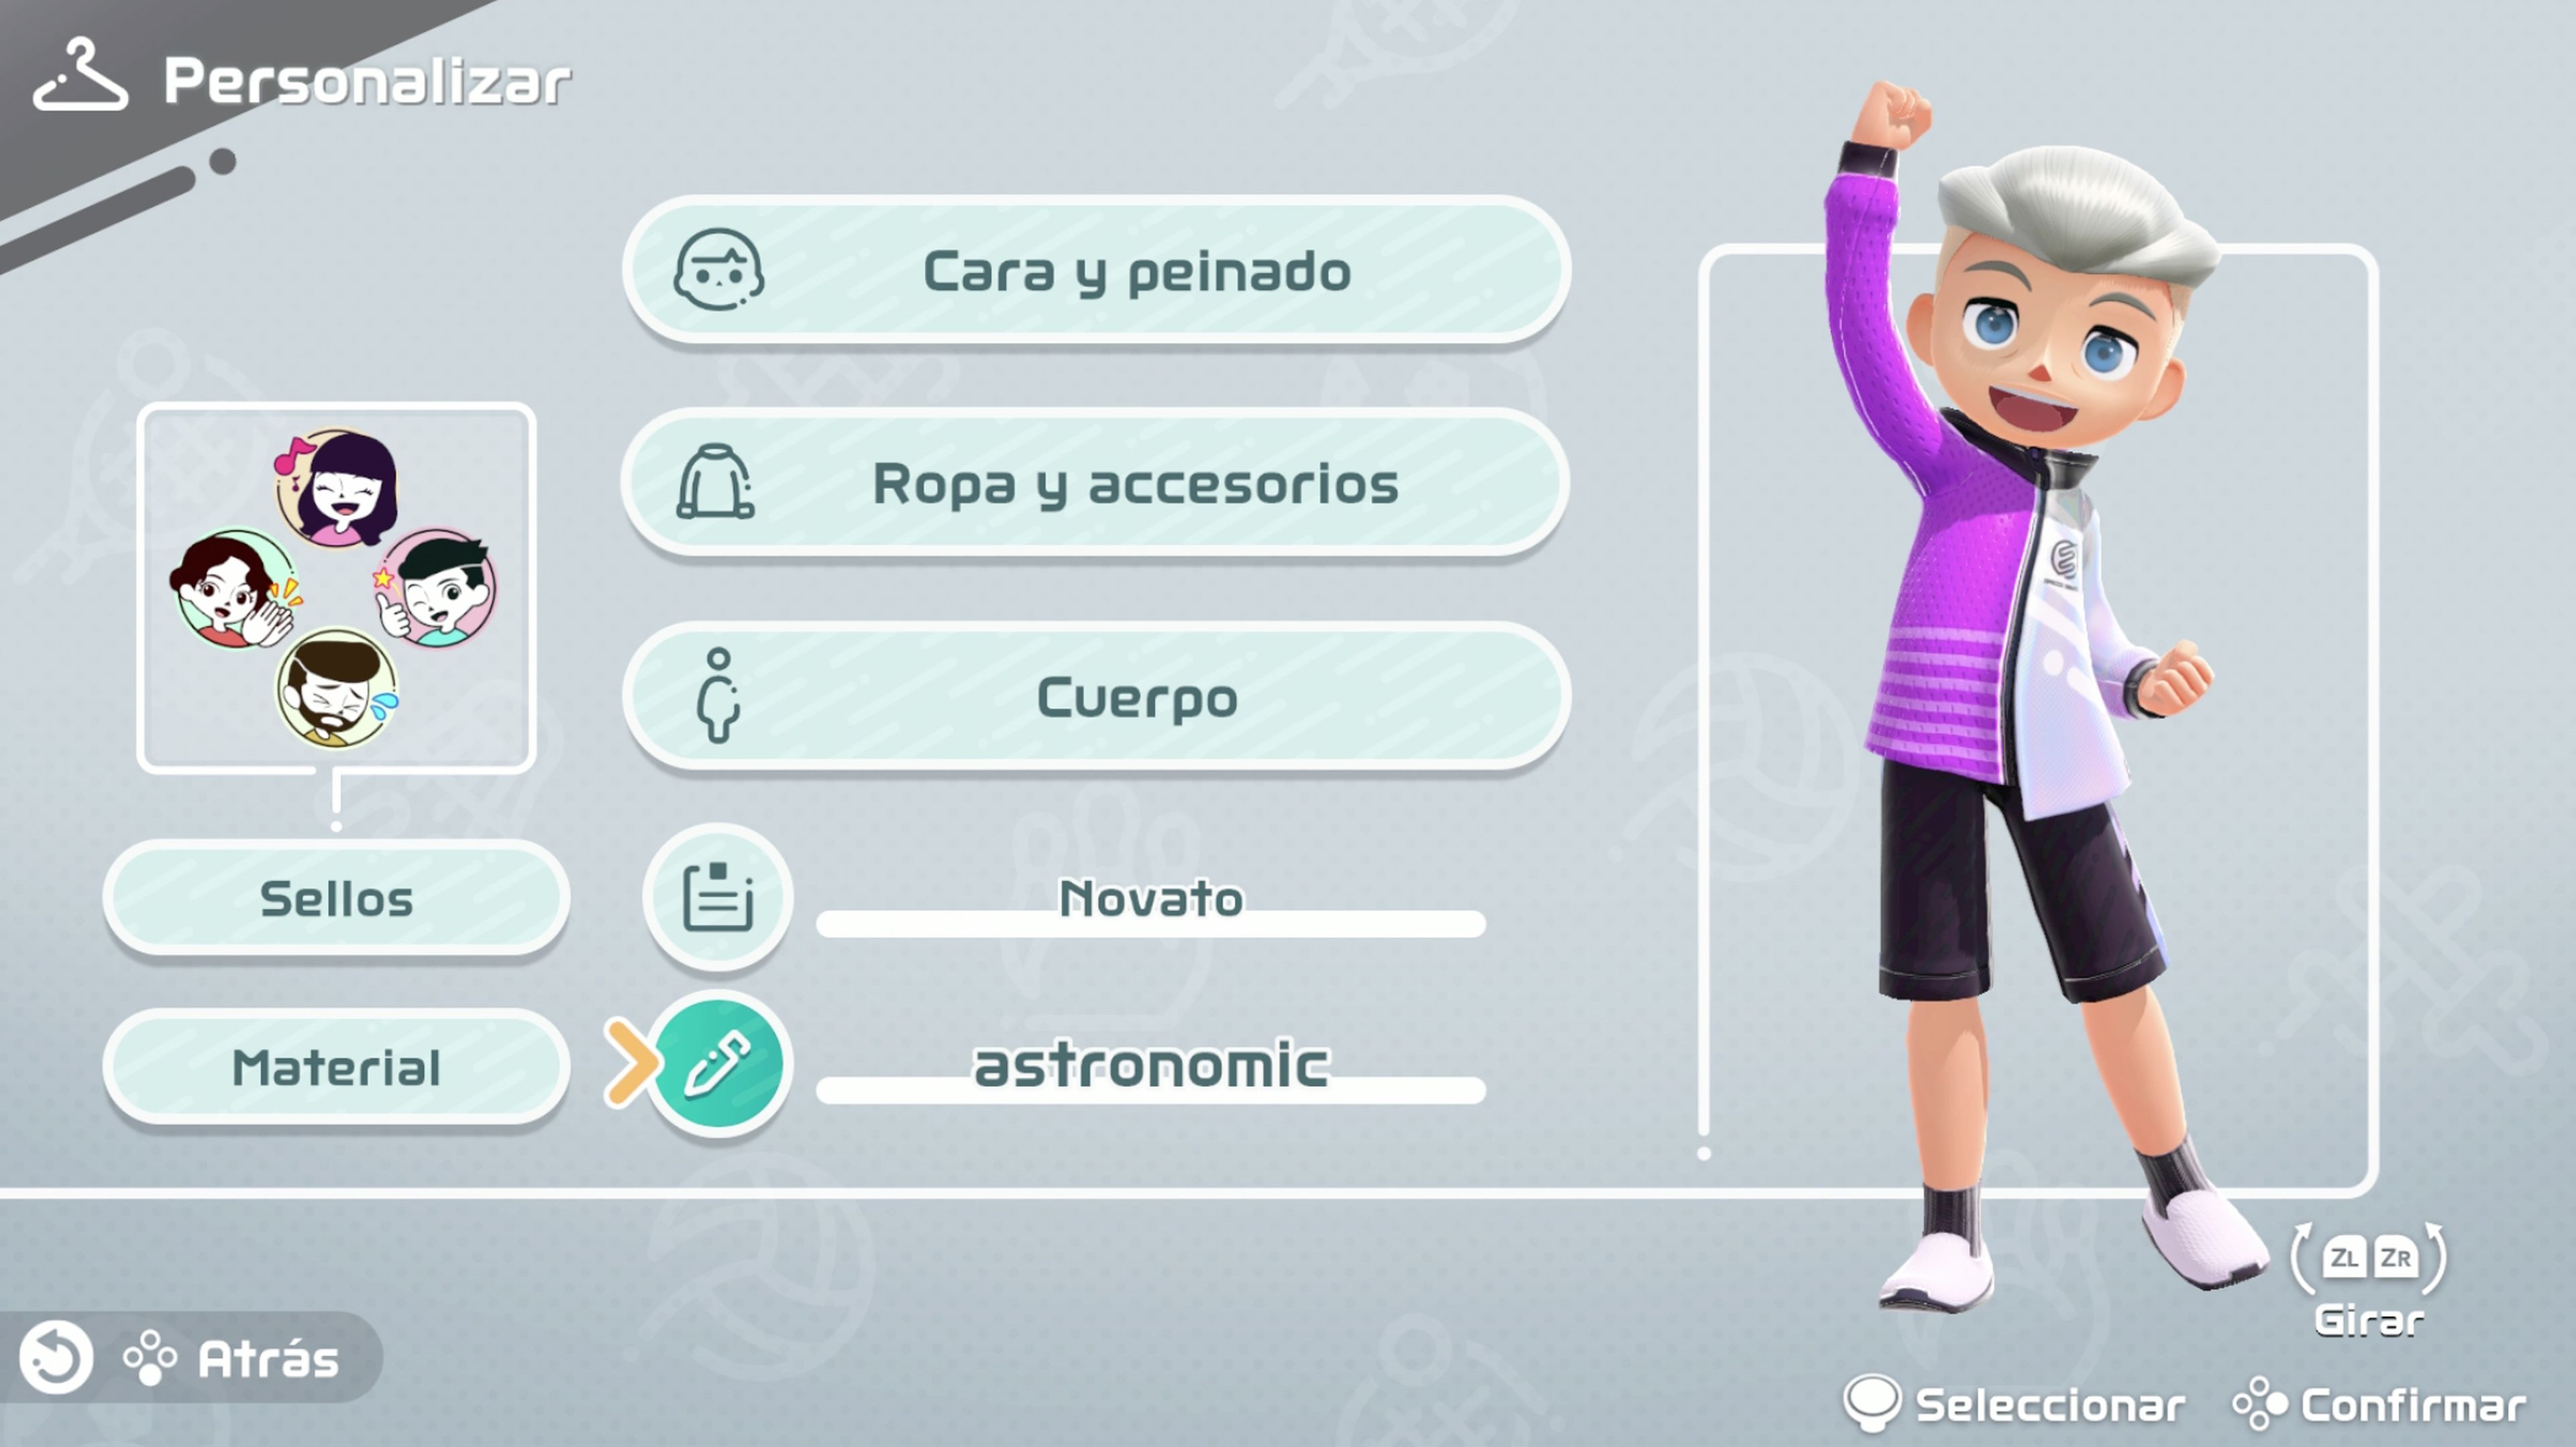 Análisis de Nintendo Switch Sports, el recopilatorio de deportes  multijugador heredero de Wii Sports.